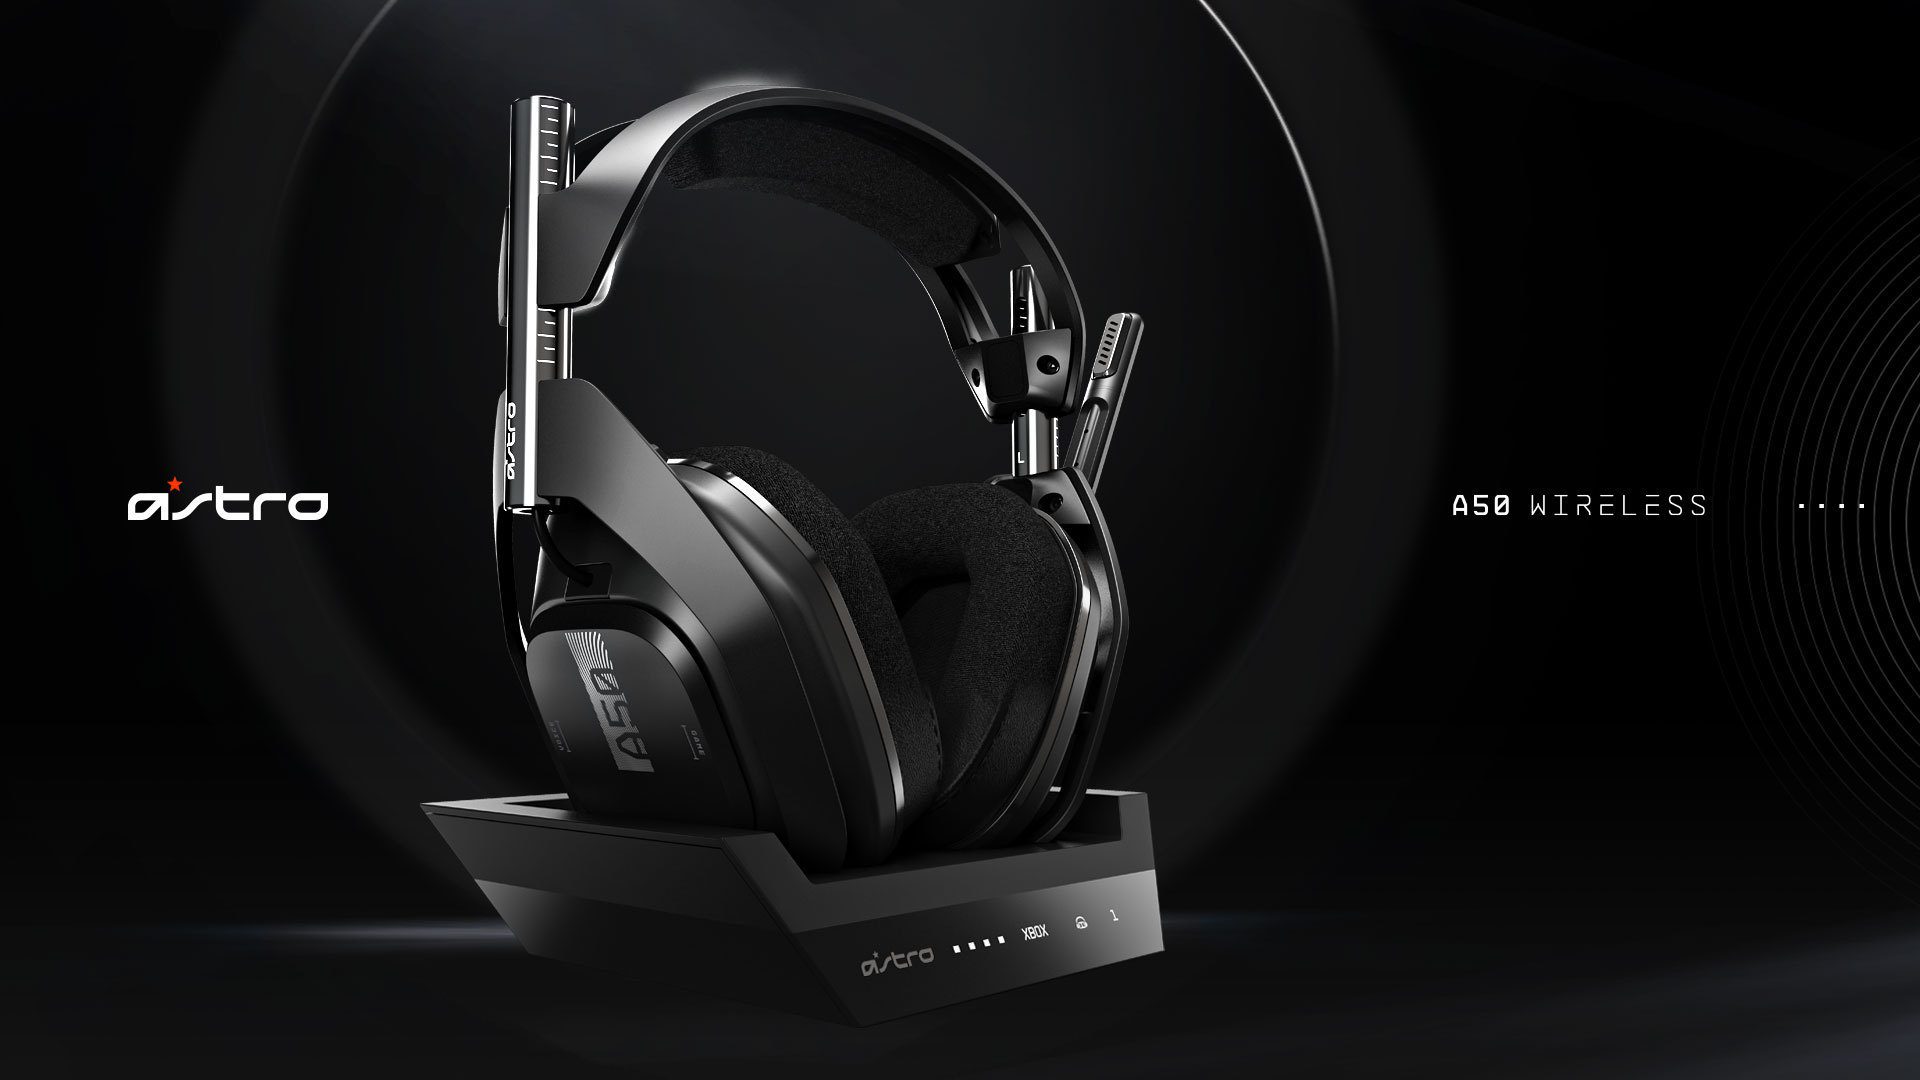 Astro Gaming anunció su nuevo headset: A50 Wireless #E3 2019